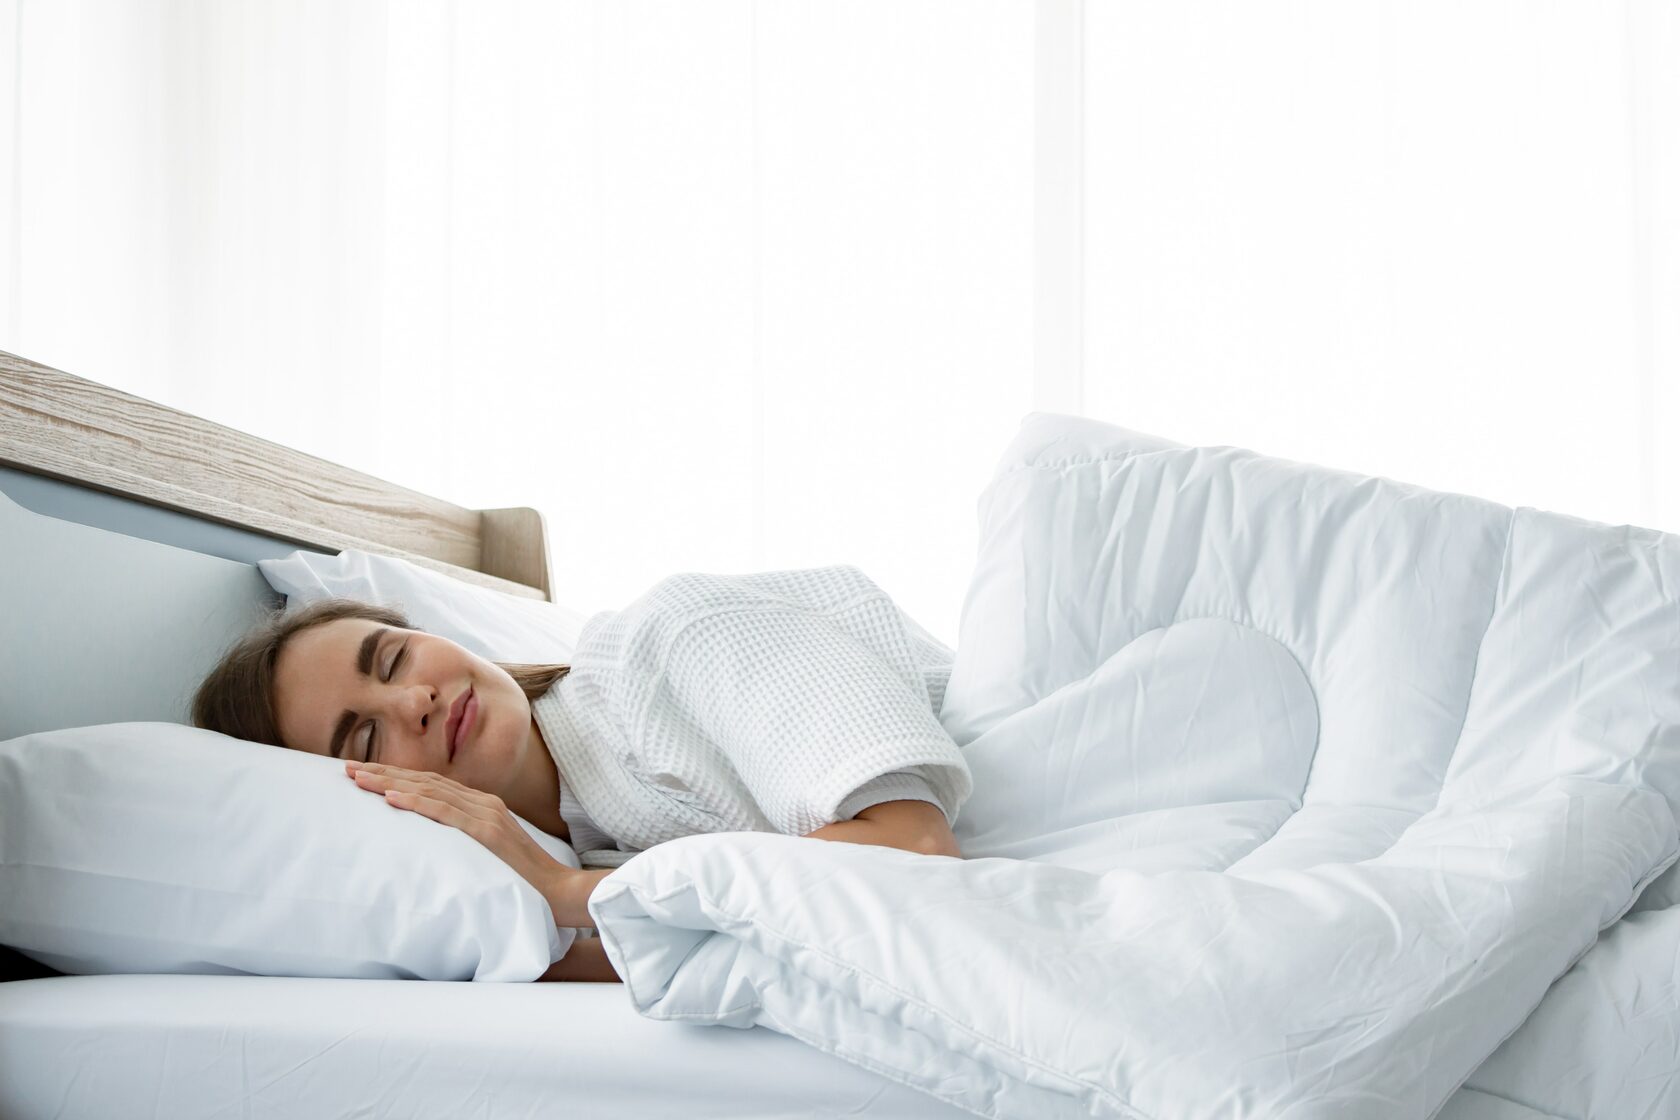 Надо спать кровати. Расслабление в кровати. Одеяло матрас. Здоровый сон кровати. Подушки и матрасы для здорового сна.